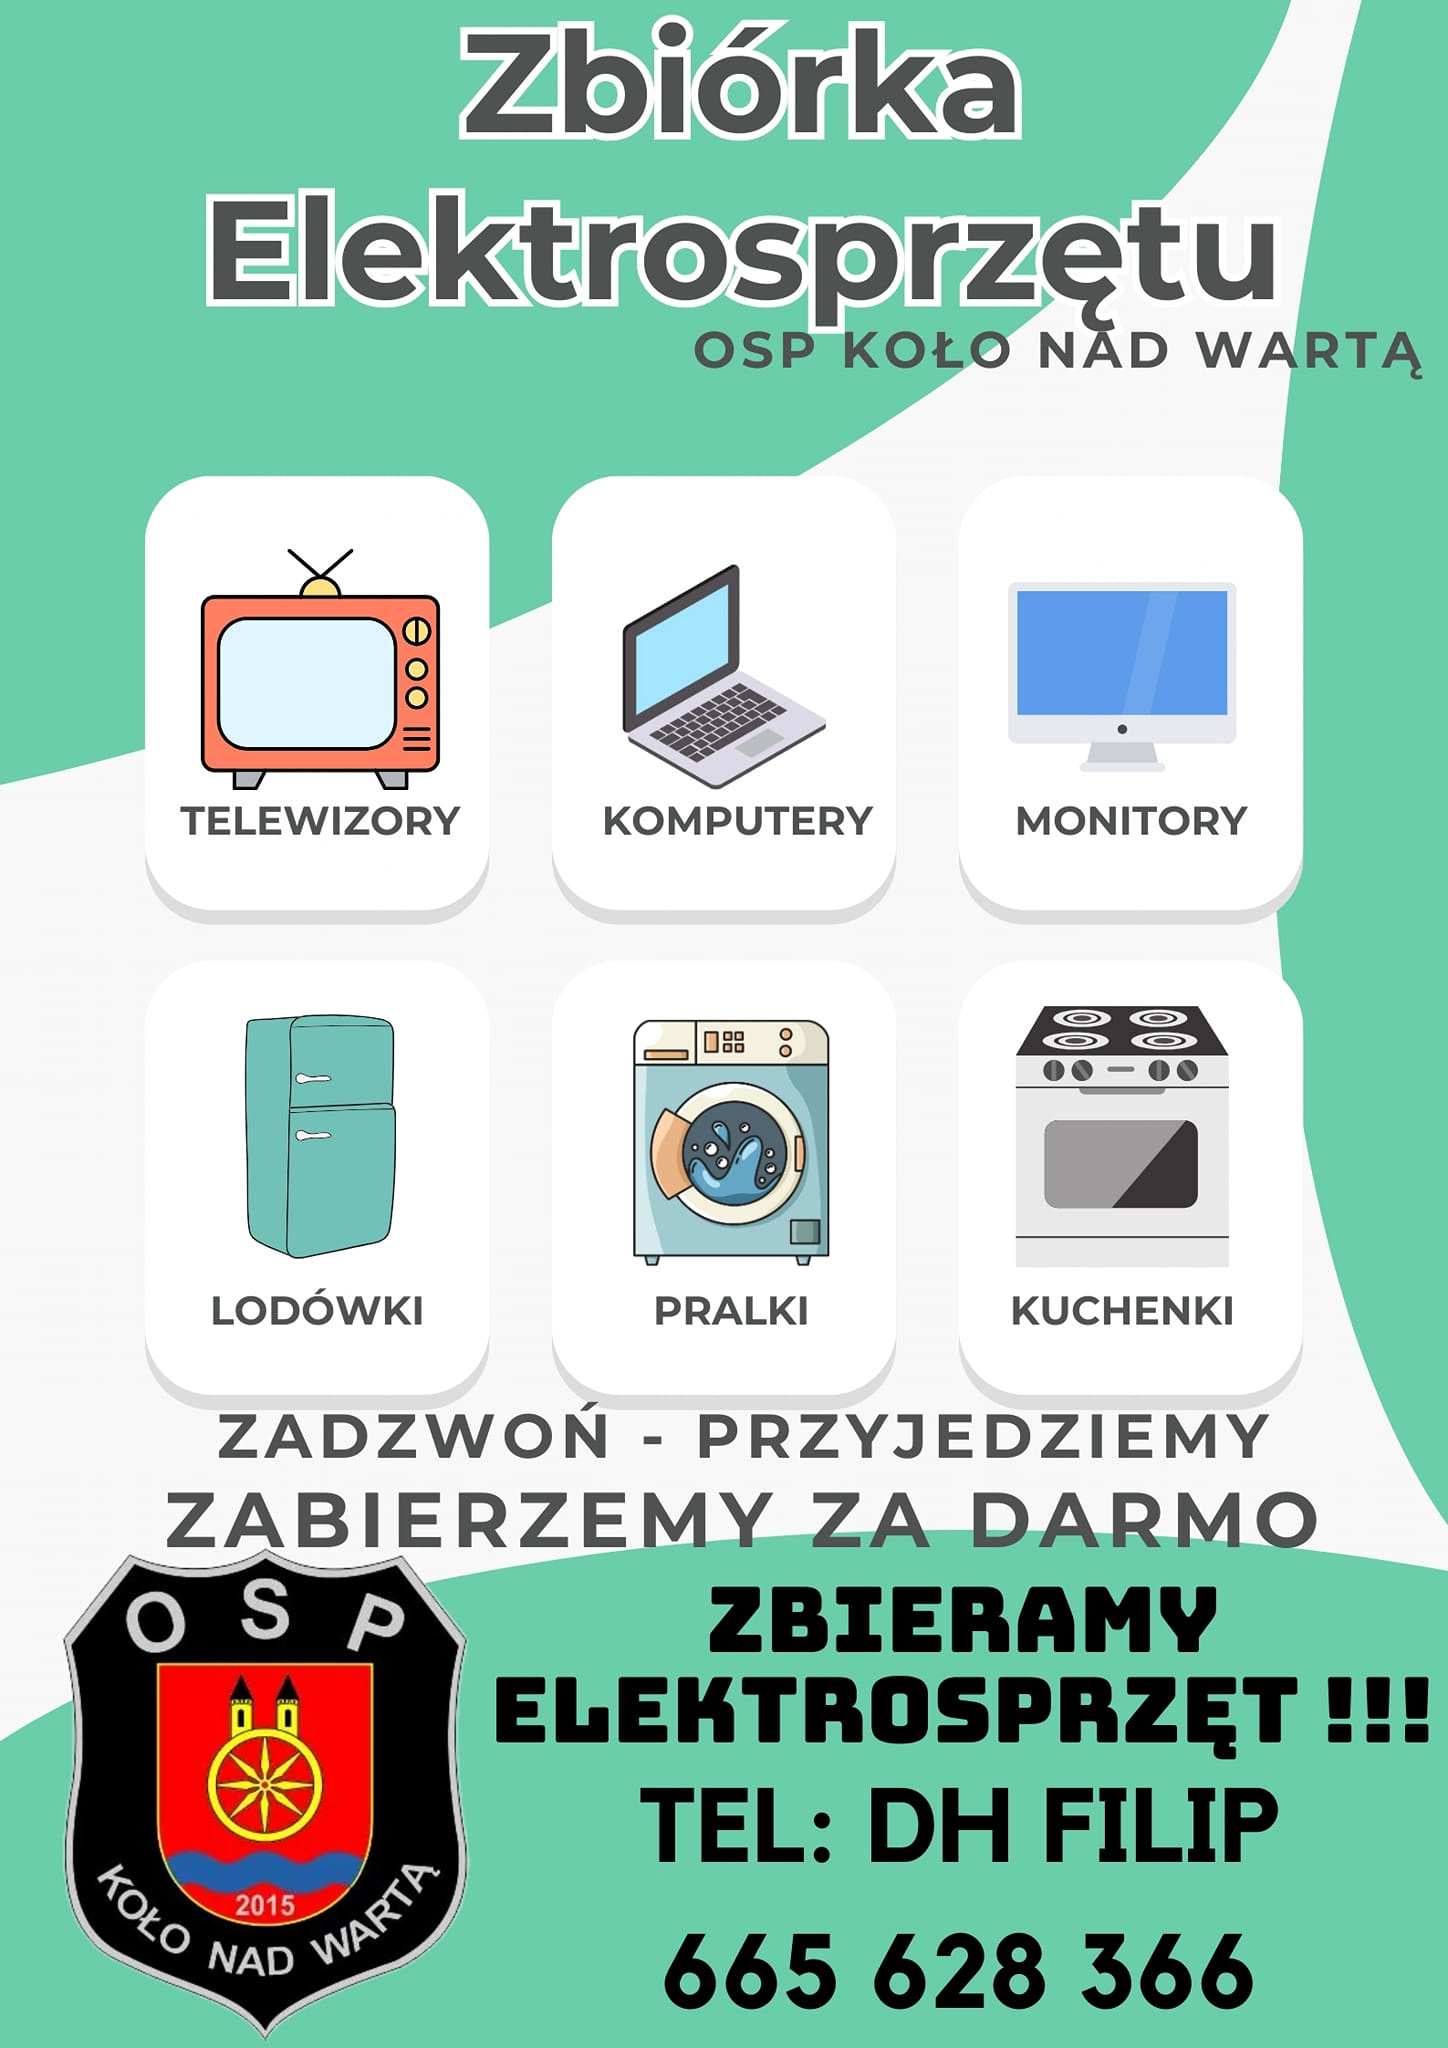 Plakat akcji informujący o zbiórce elektrosprzętu przez OSP Koło nad Wartą, tekst pod plakatem